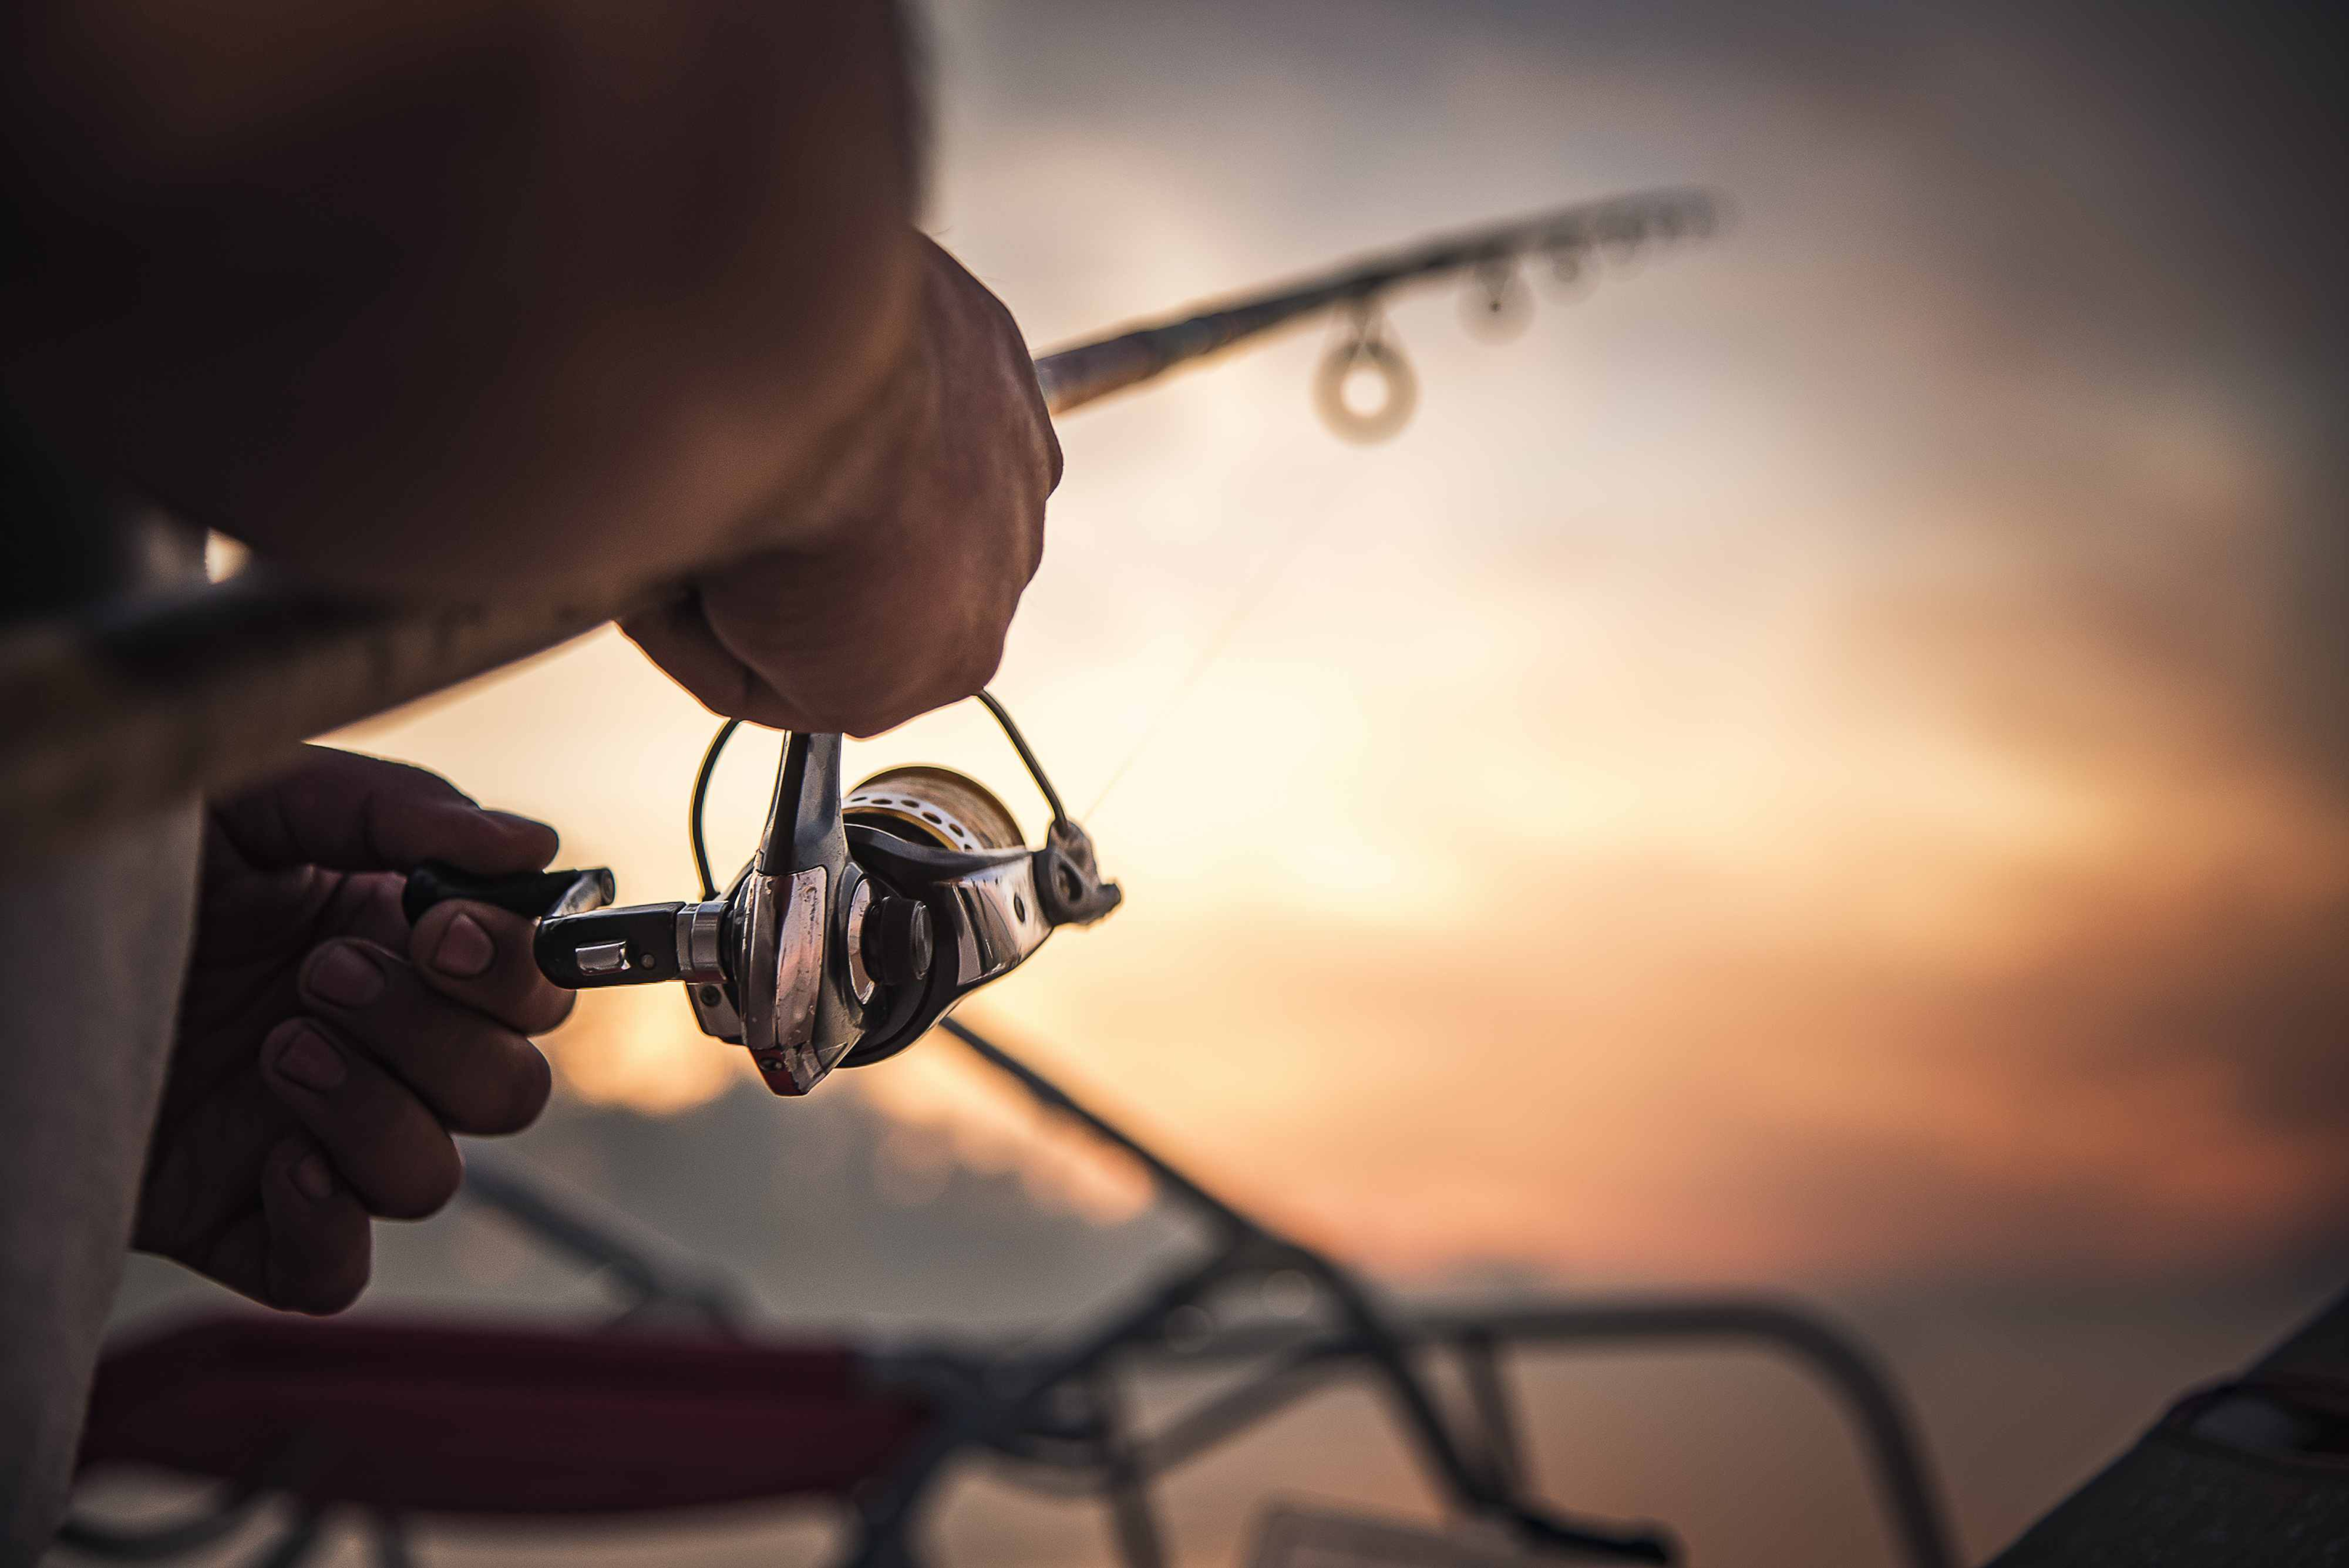 Carretel de pesca em close-up, pescador segurando vara de pesca, fundo pôr do sol